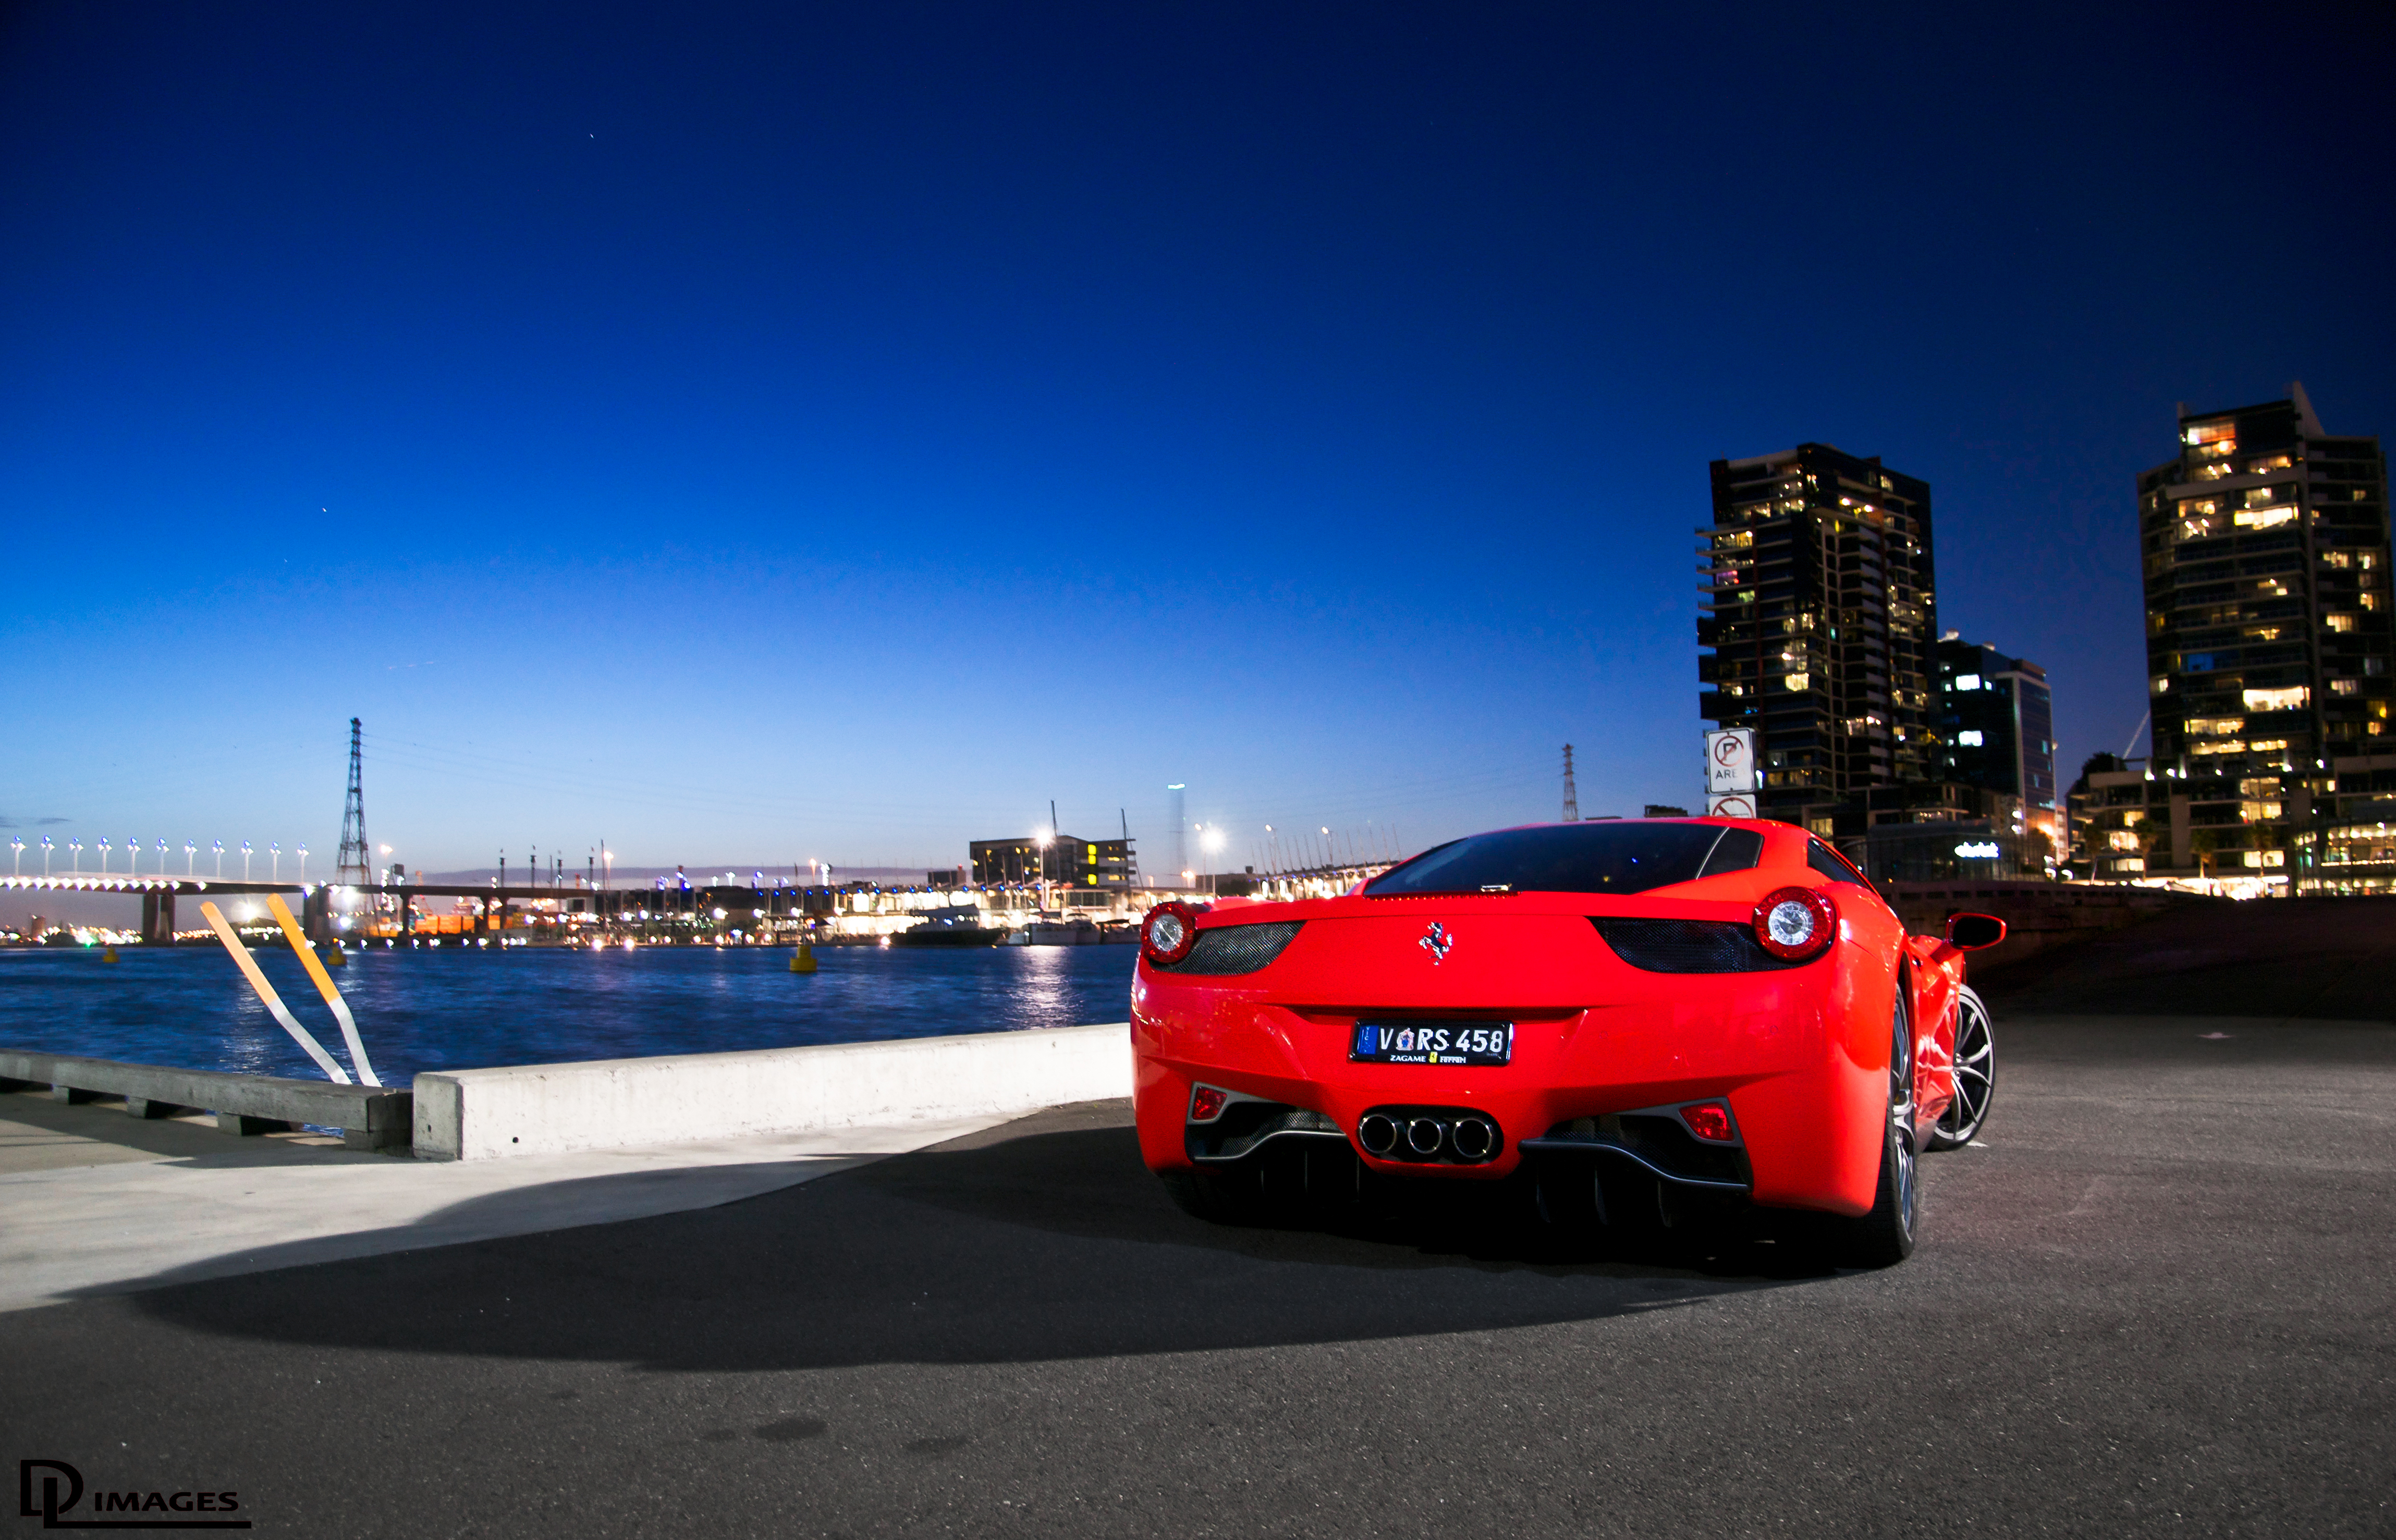 350+ 4K Ferrari Fondos de pantalla | Fondos de Escritorio